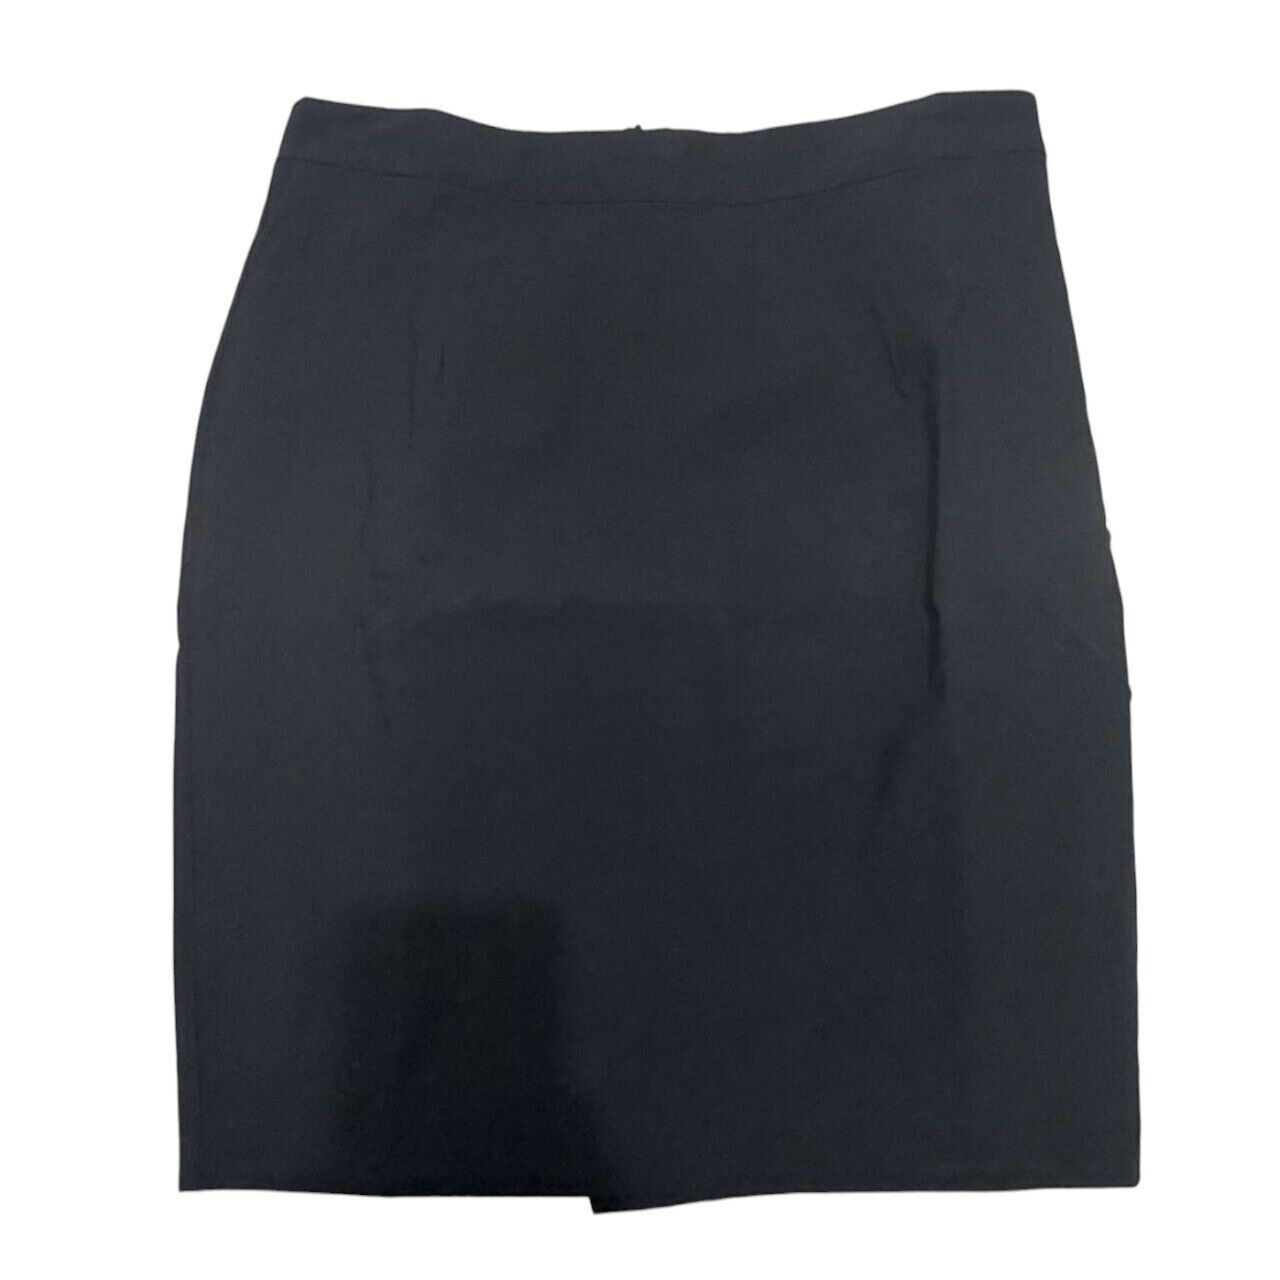 The Executive Black Mini Skirt